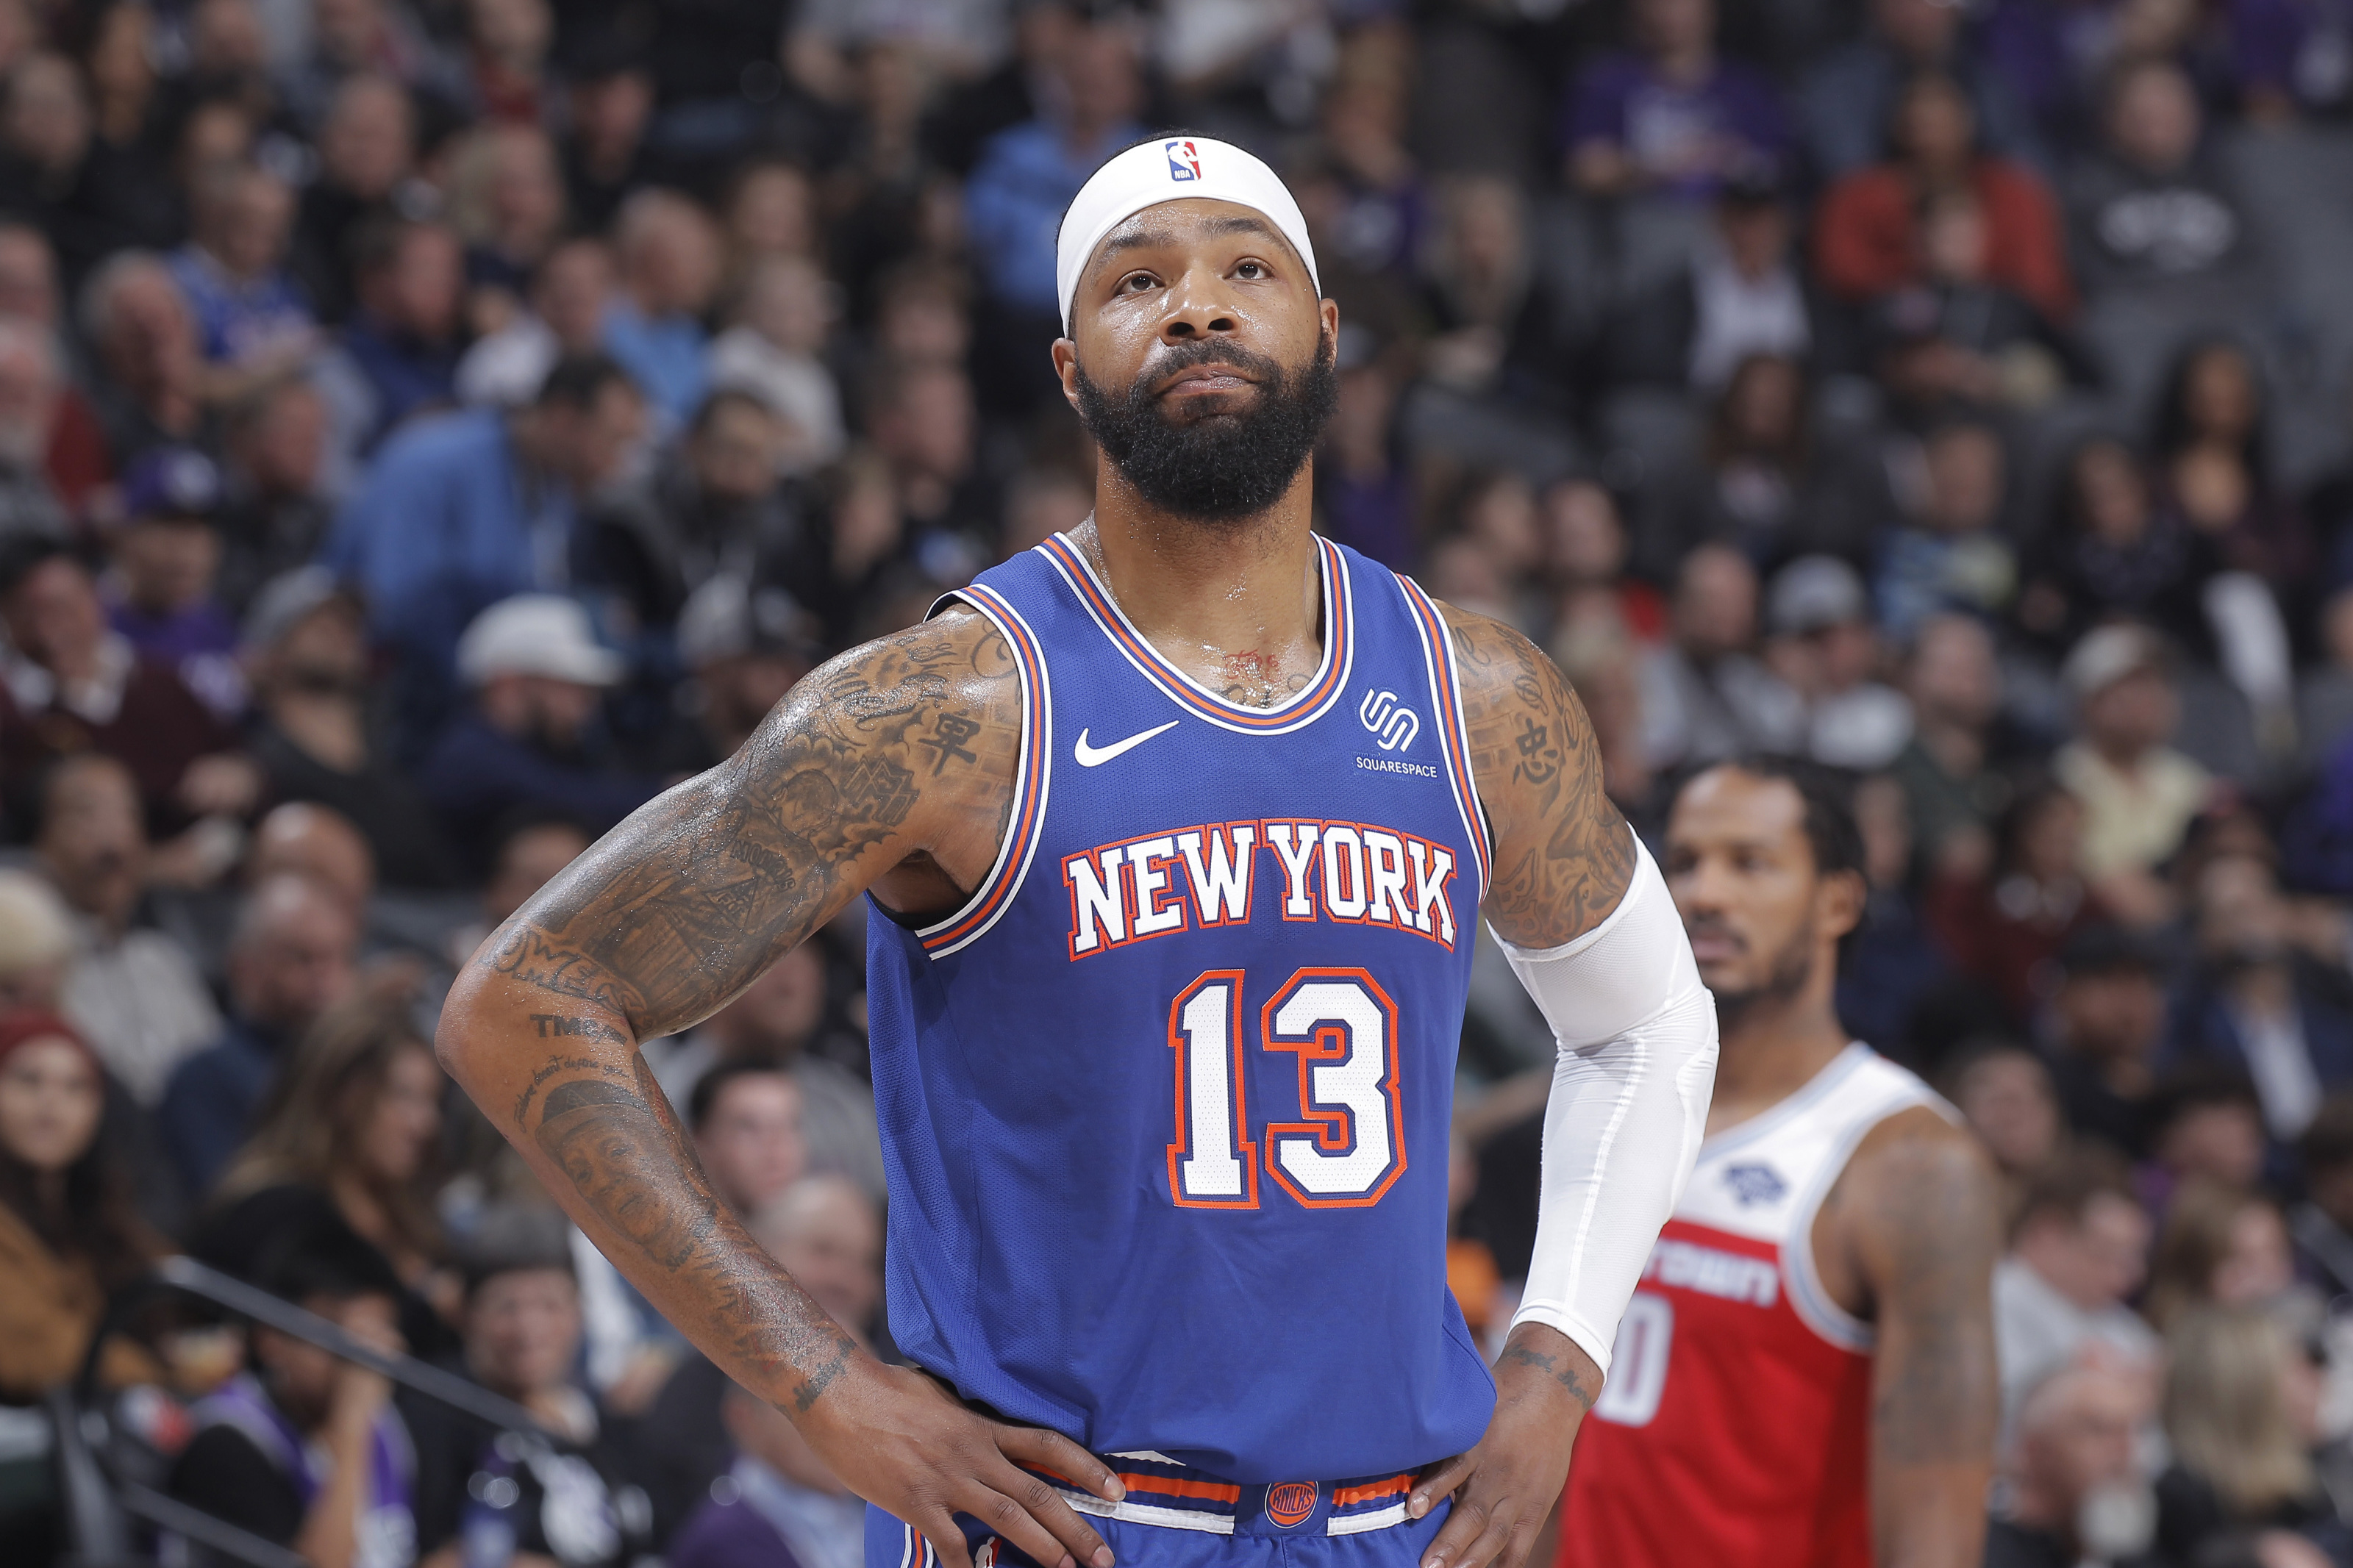 New York Knicks Big & Tall NBA Apparel, New York Knicks Big & Tall Majestic  Clothing